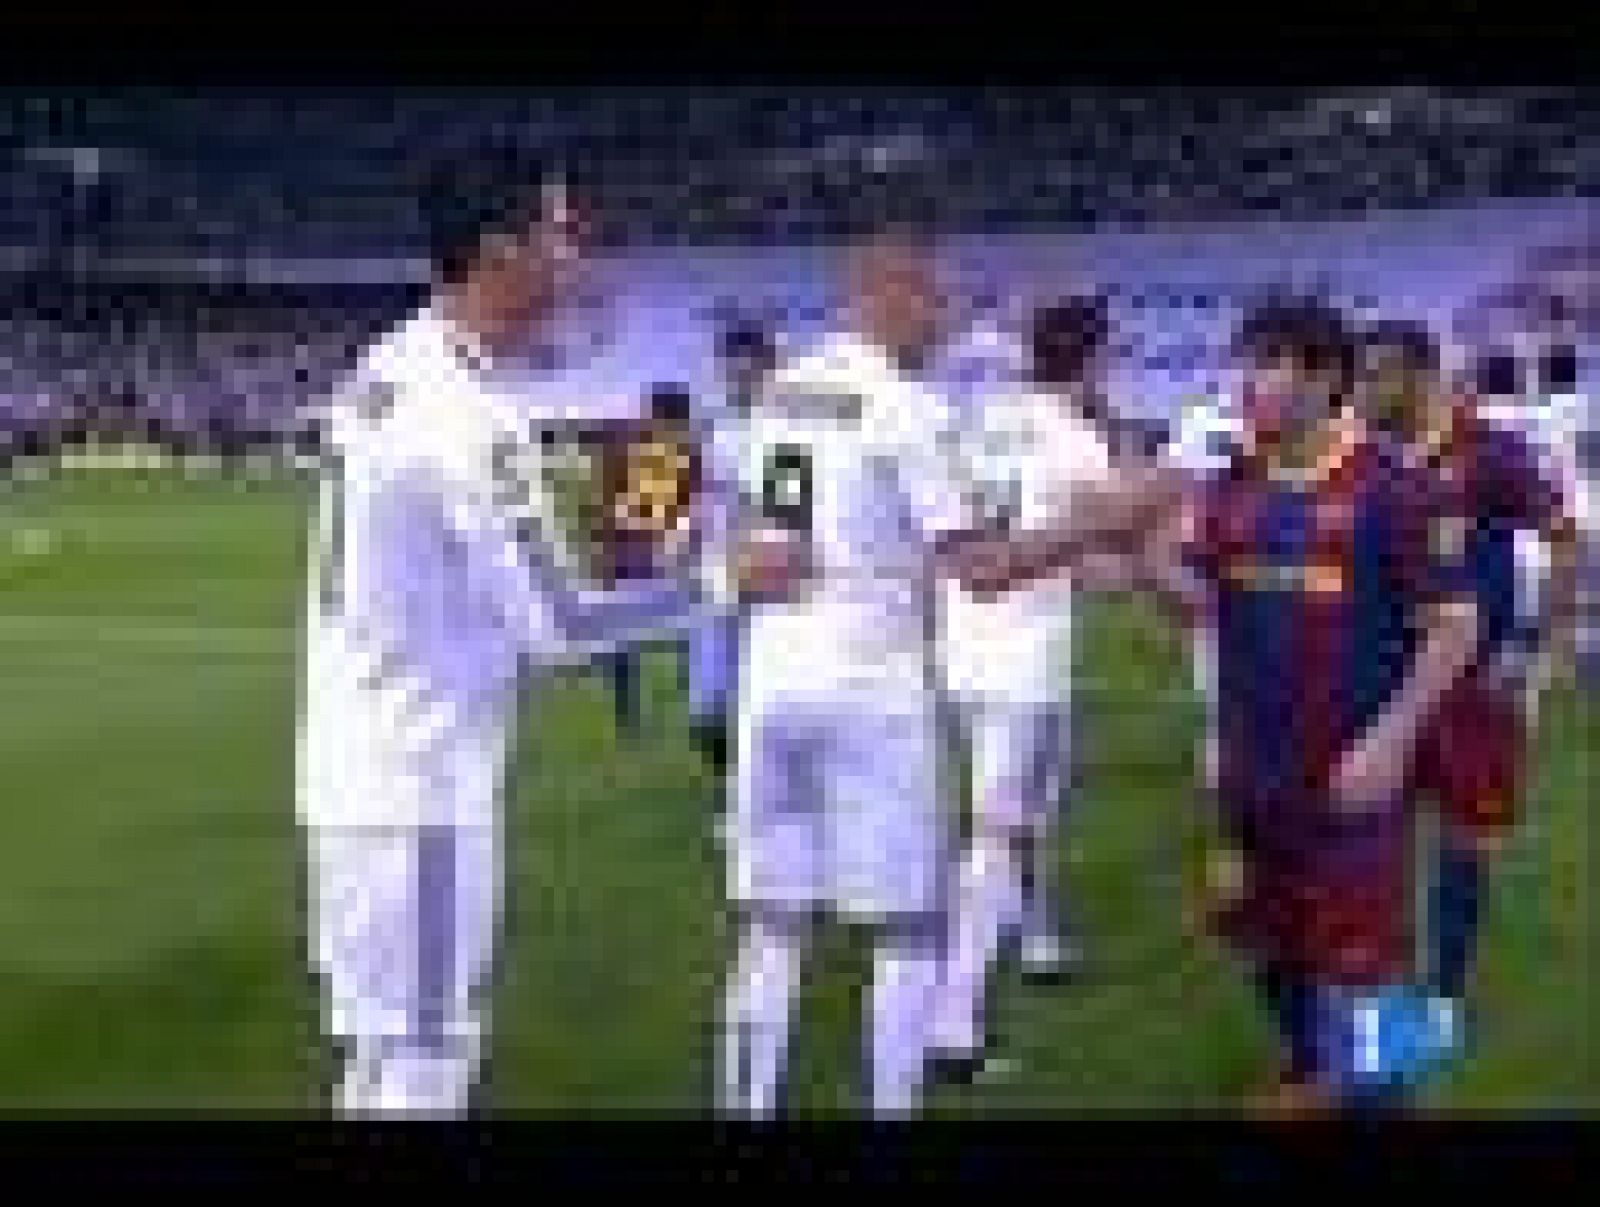 La final de Copa del Rey entre Barcelona y Real Madrid enfrentará de nuevo a Messi y Cristiano Ronaldo, para muchos los dos mejores jugadores del mundo.